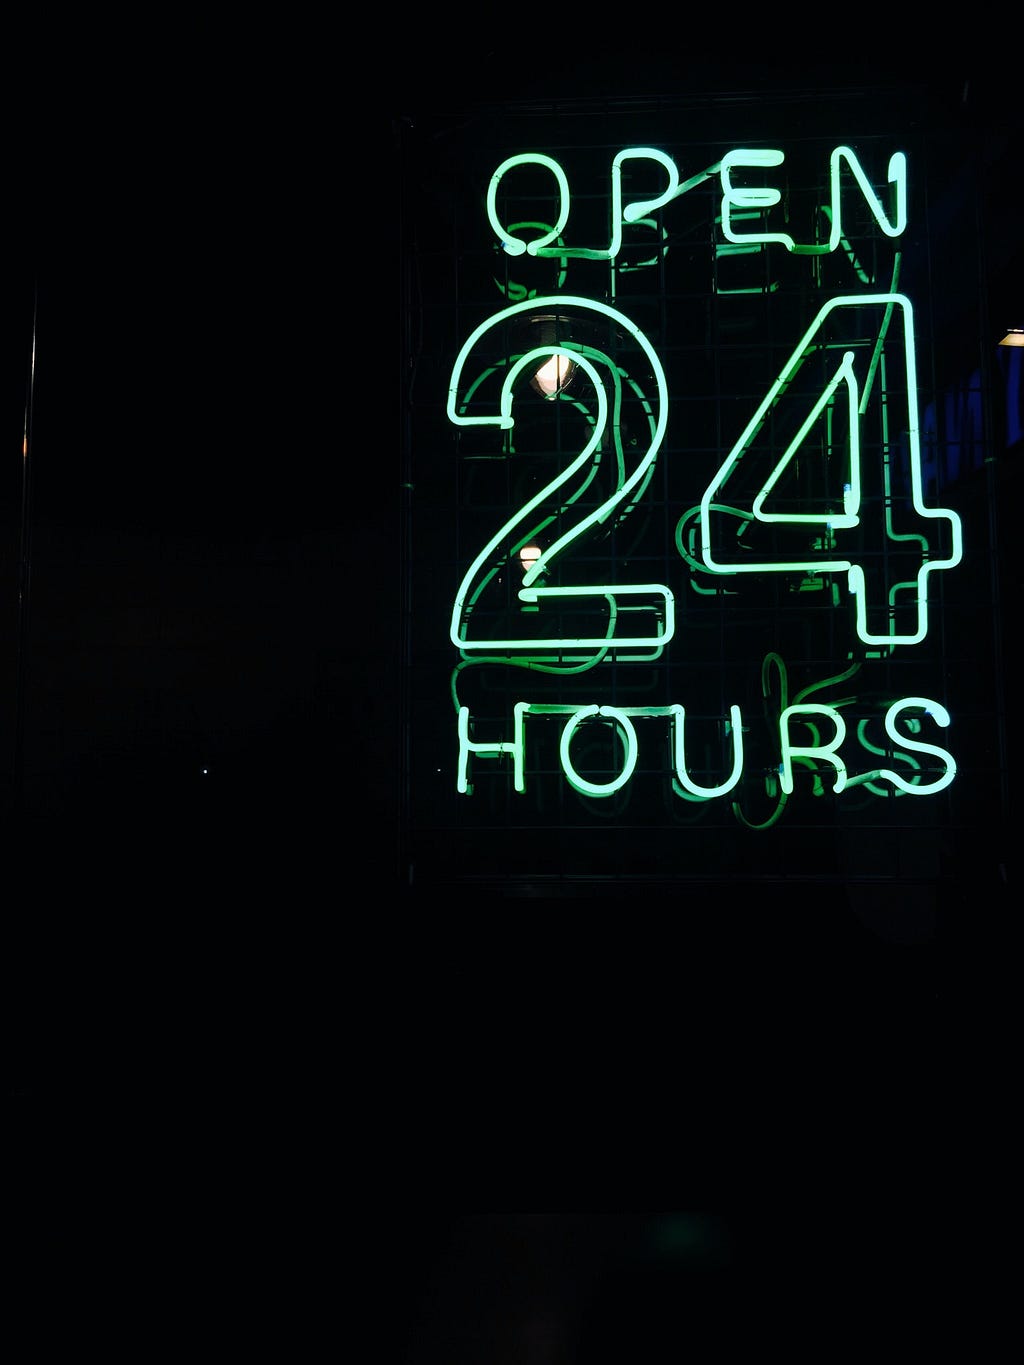 Placa em neon, com as palavras “Aberto 24 horas” brilhando em um azul claro